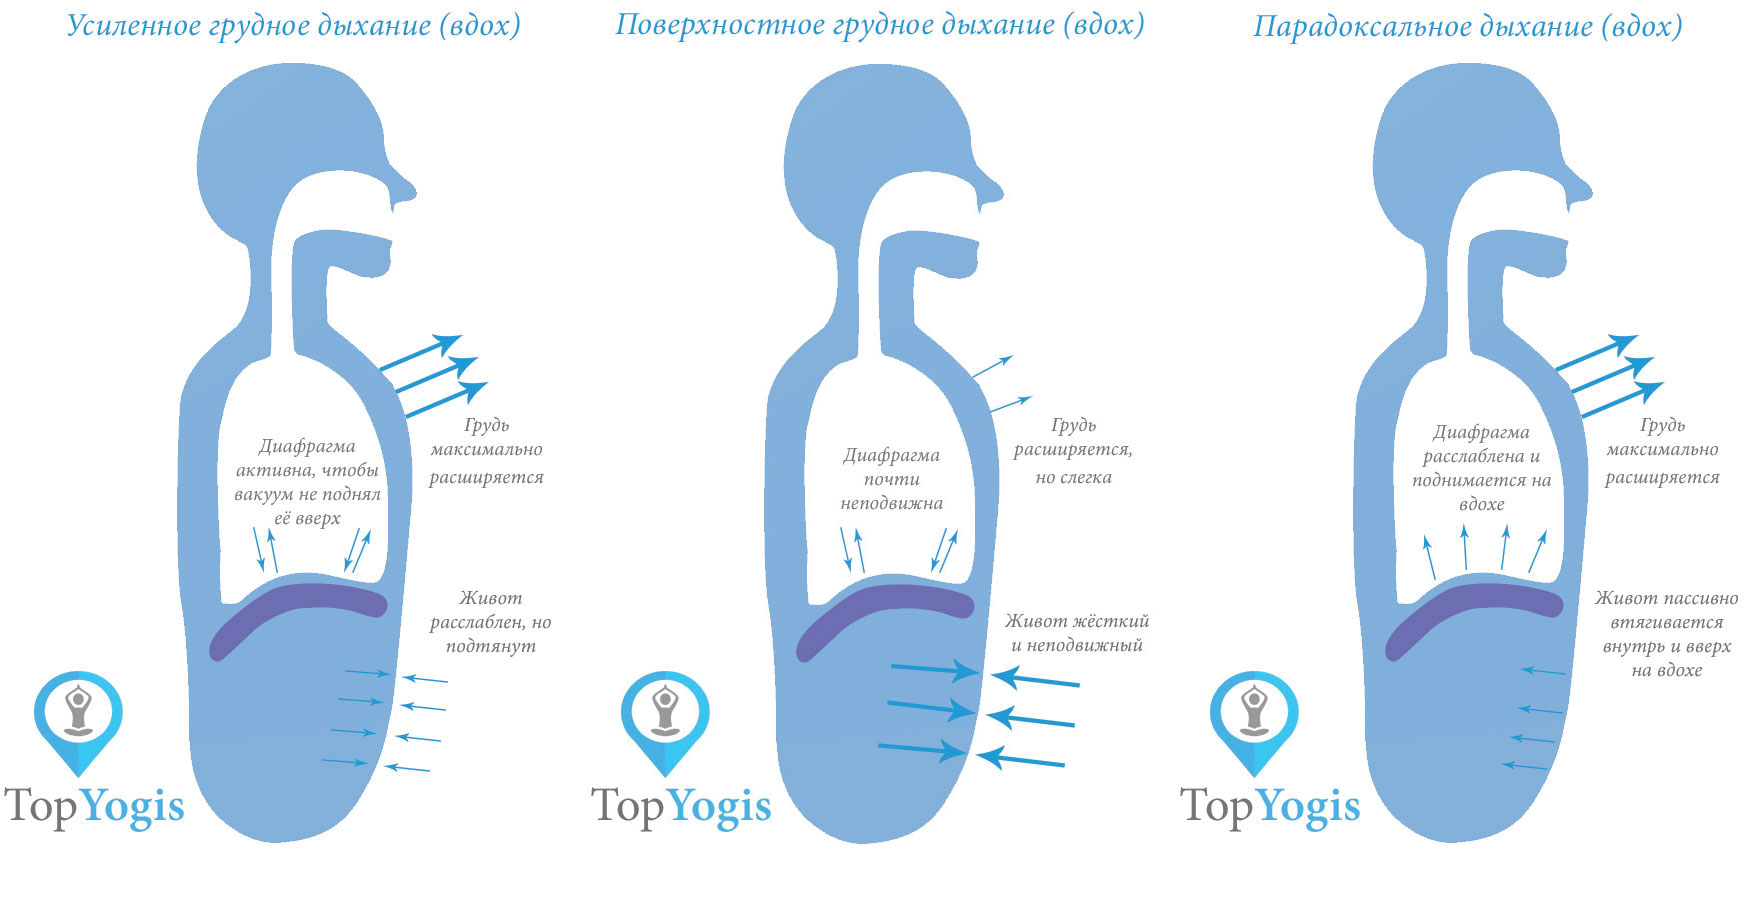 Глубокое и поверхностное грудное дыхание Анатомия йоги